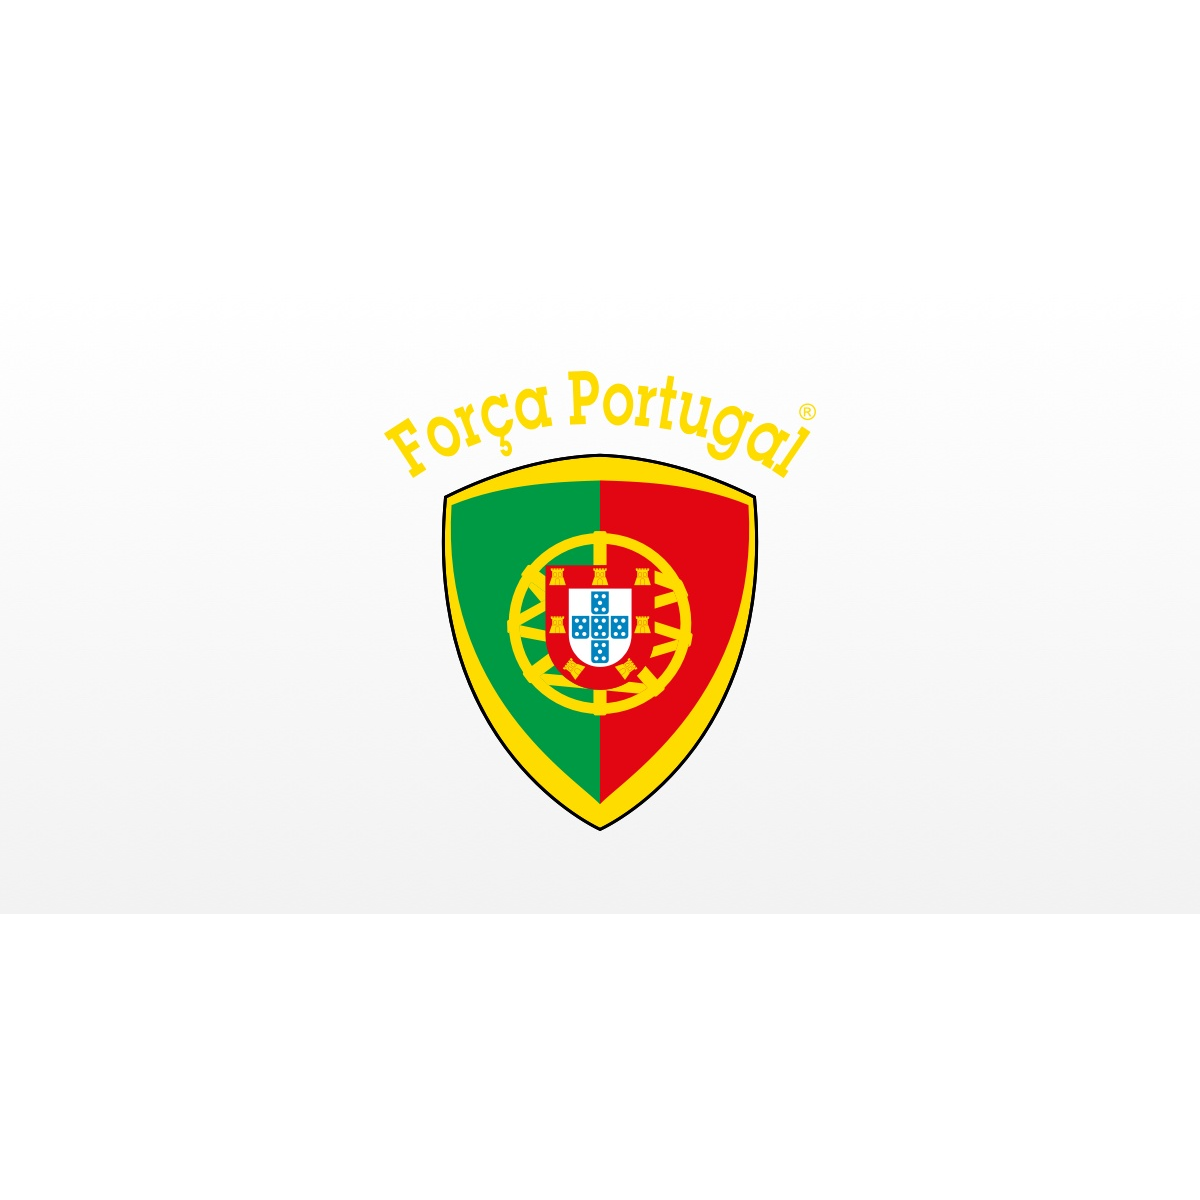 Liga Portugal 2 2020/21. - Colours Of Football